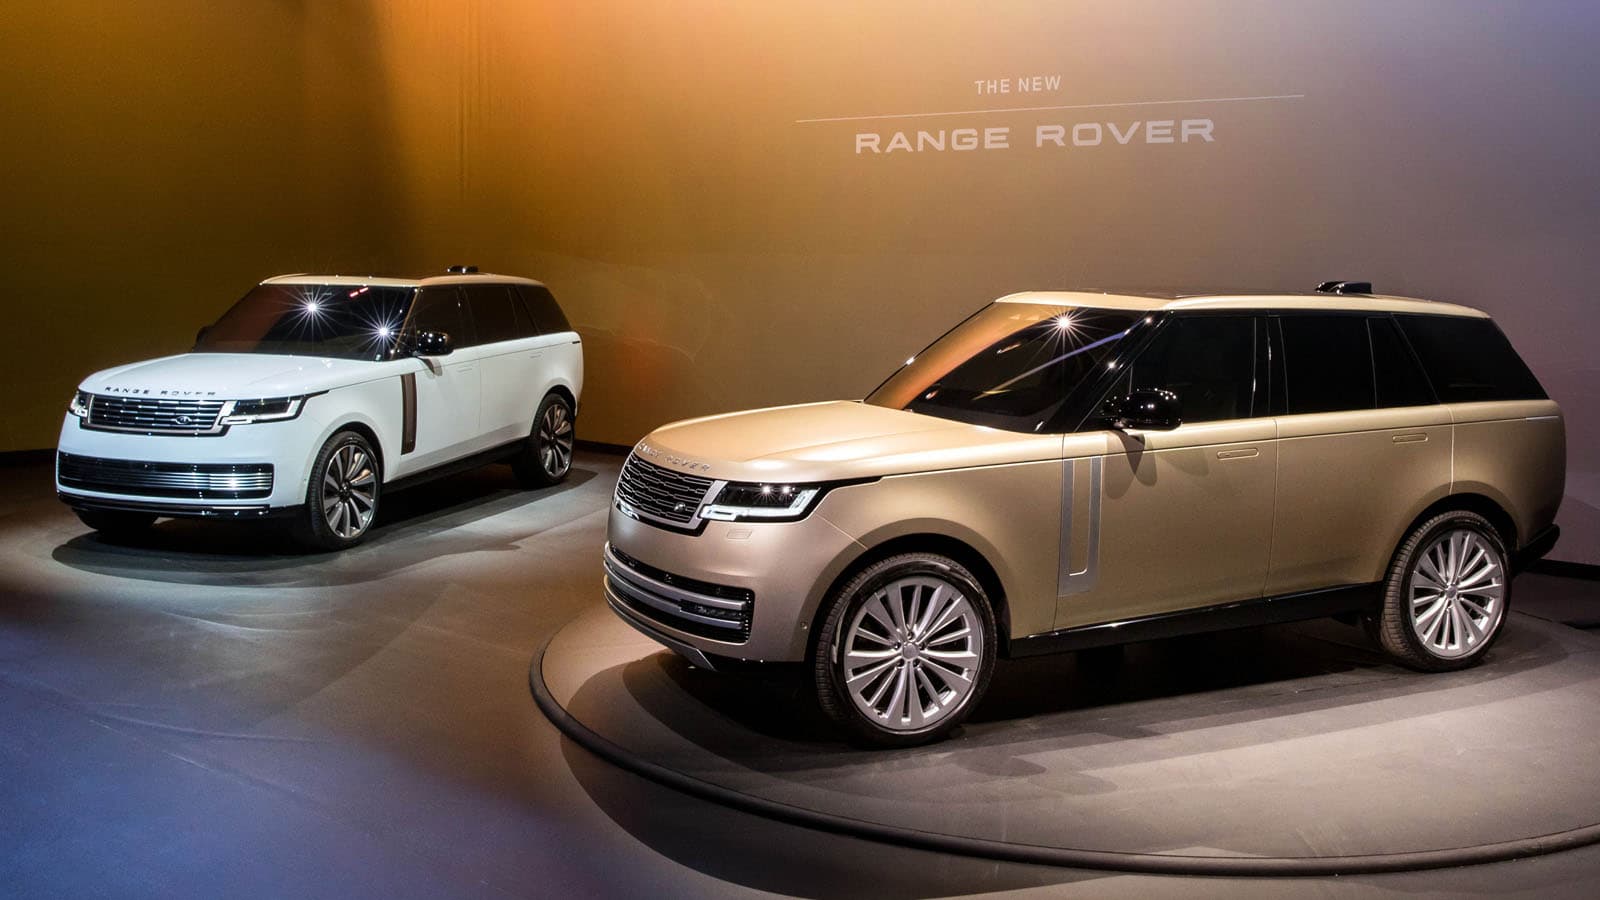 Ra mắt Range Rover thế hệ thứ năm – Quý tộc trên mọi địa hình